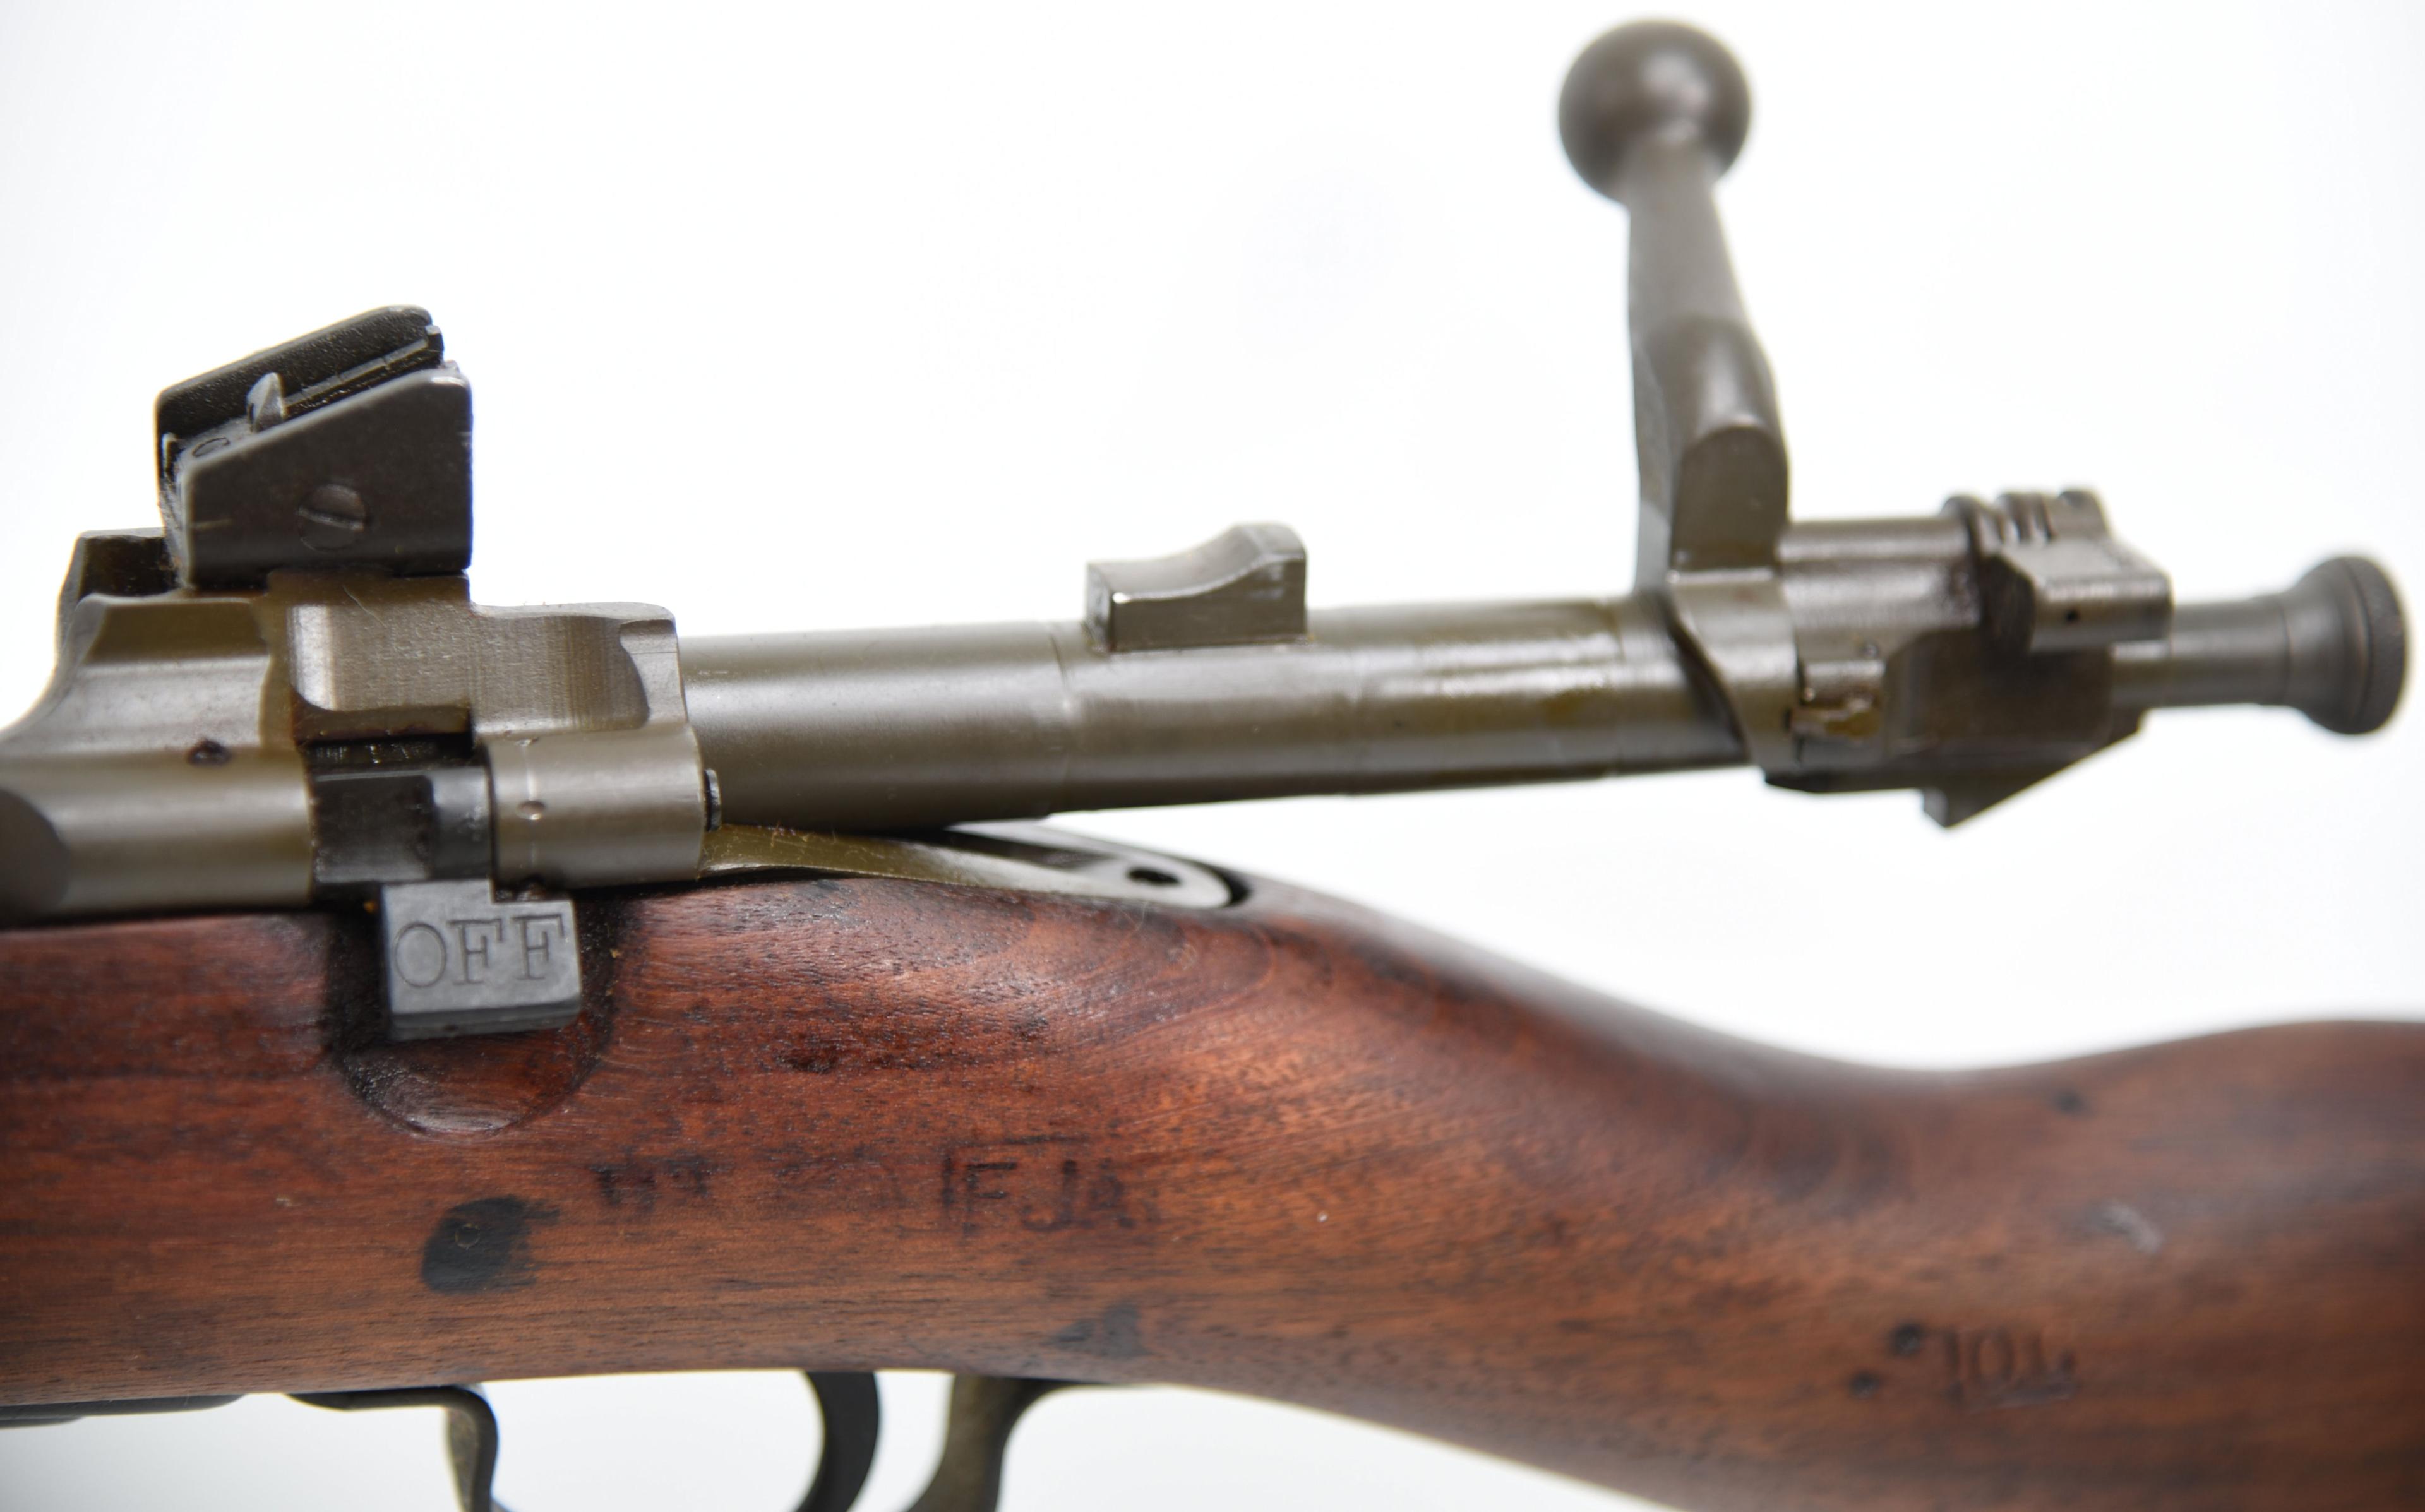 U.S. REMINGTON 1903-A3 Bolt Action Rifle